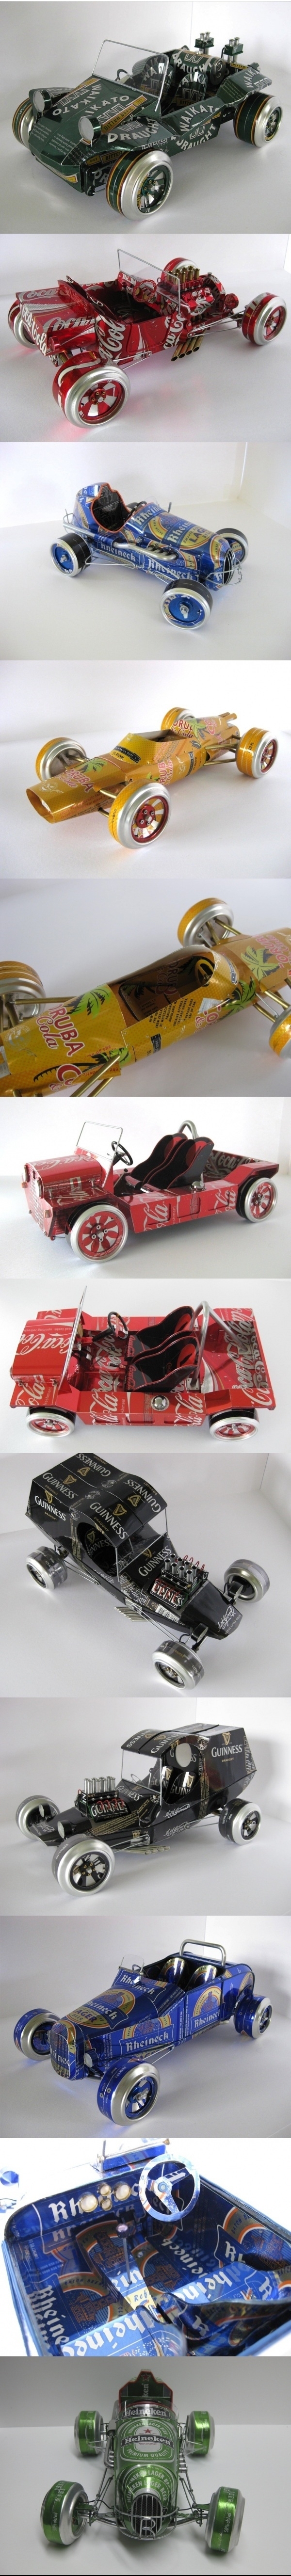  Модели автомобилей из алюминиевых банок